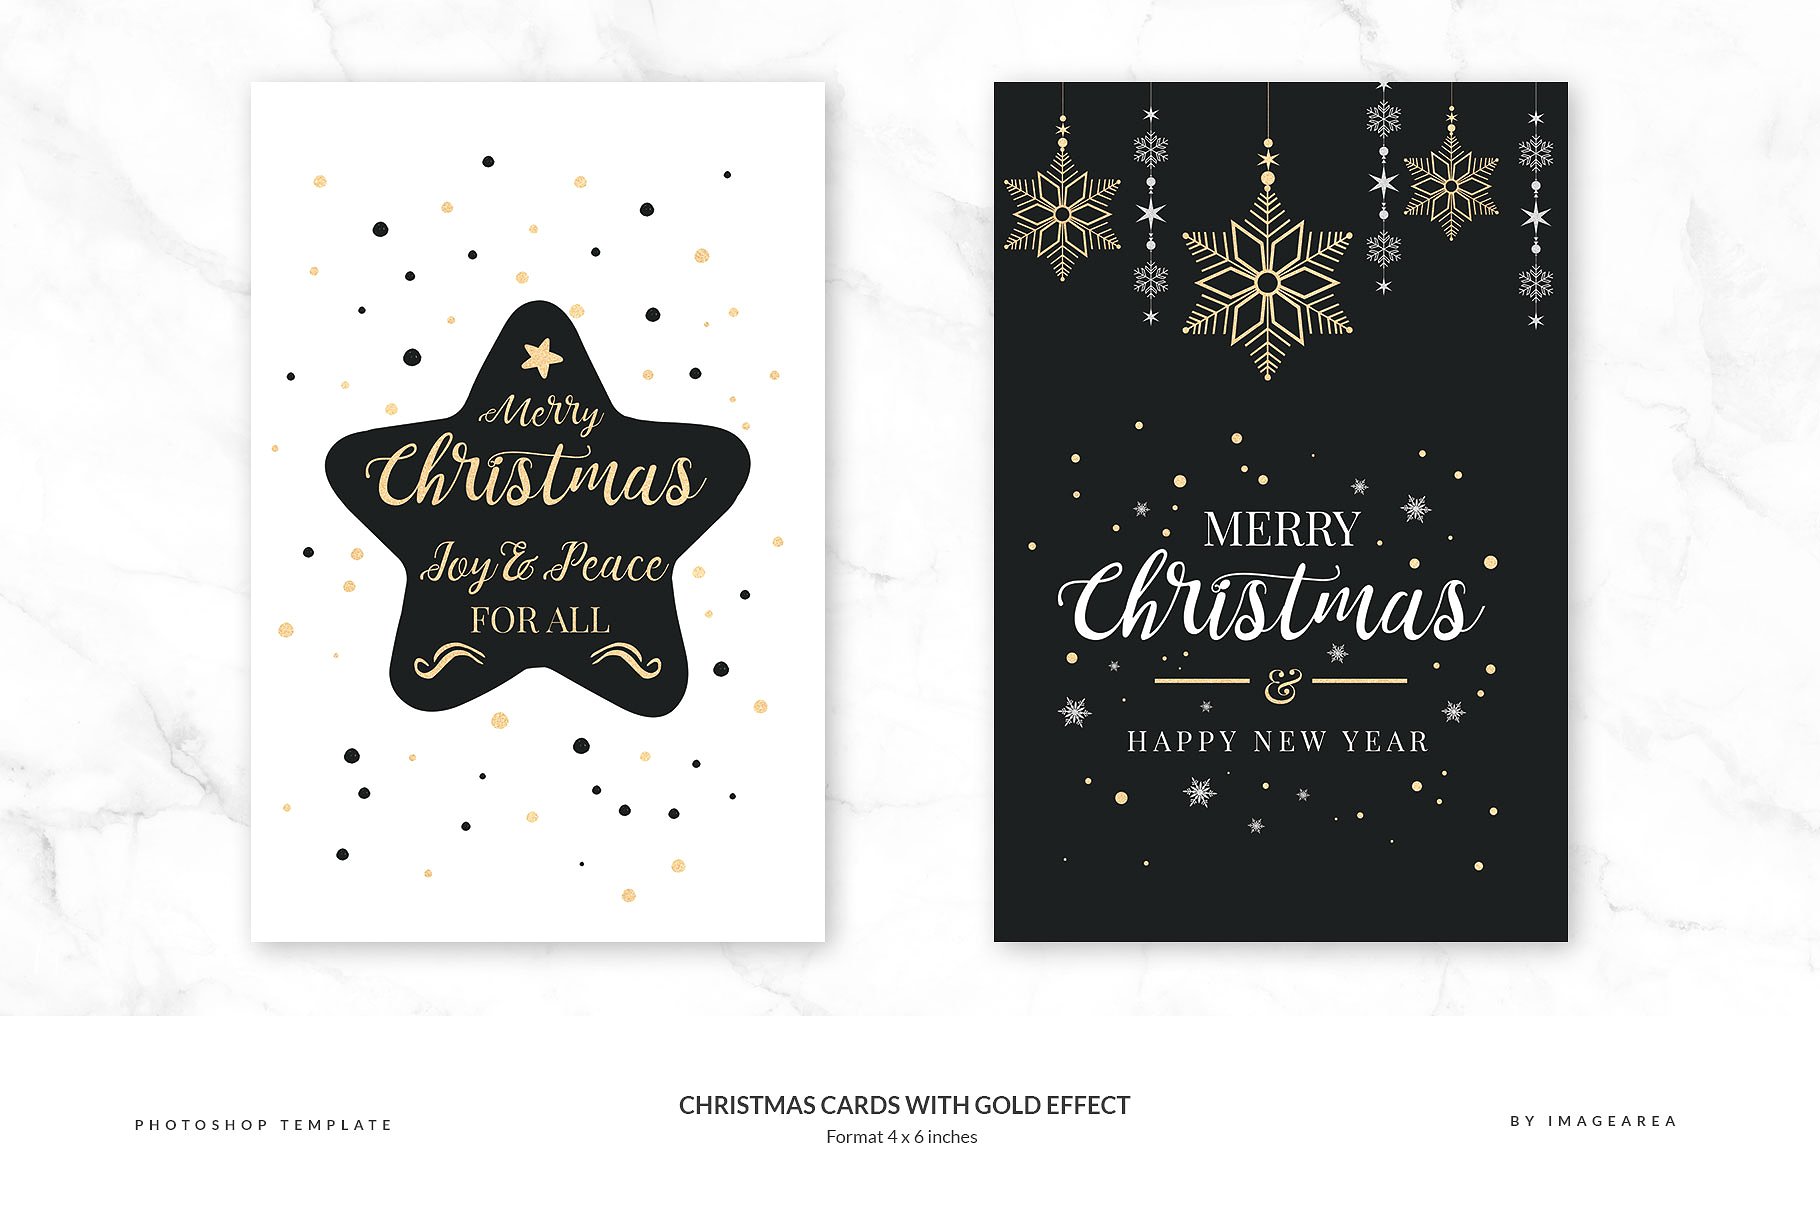 铂金镶嵌效果圣诞节贺卡模板 Christmas Cards with Gold Effect插图(2)